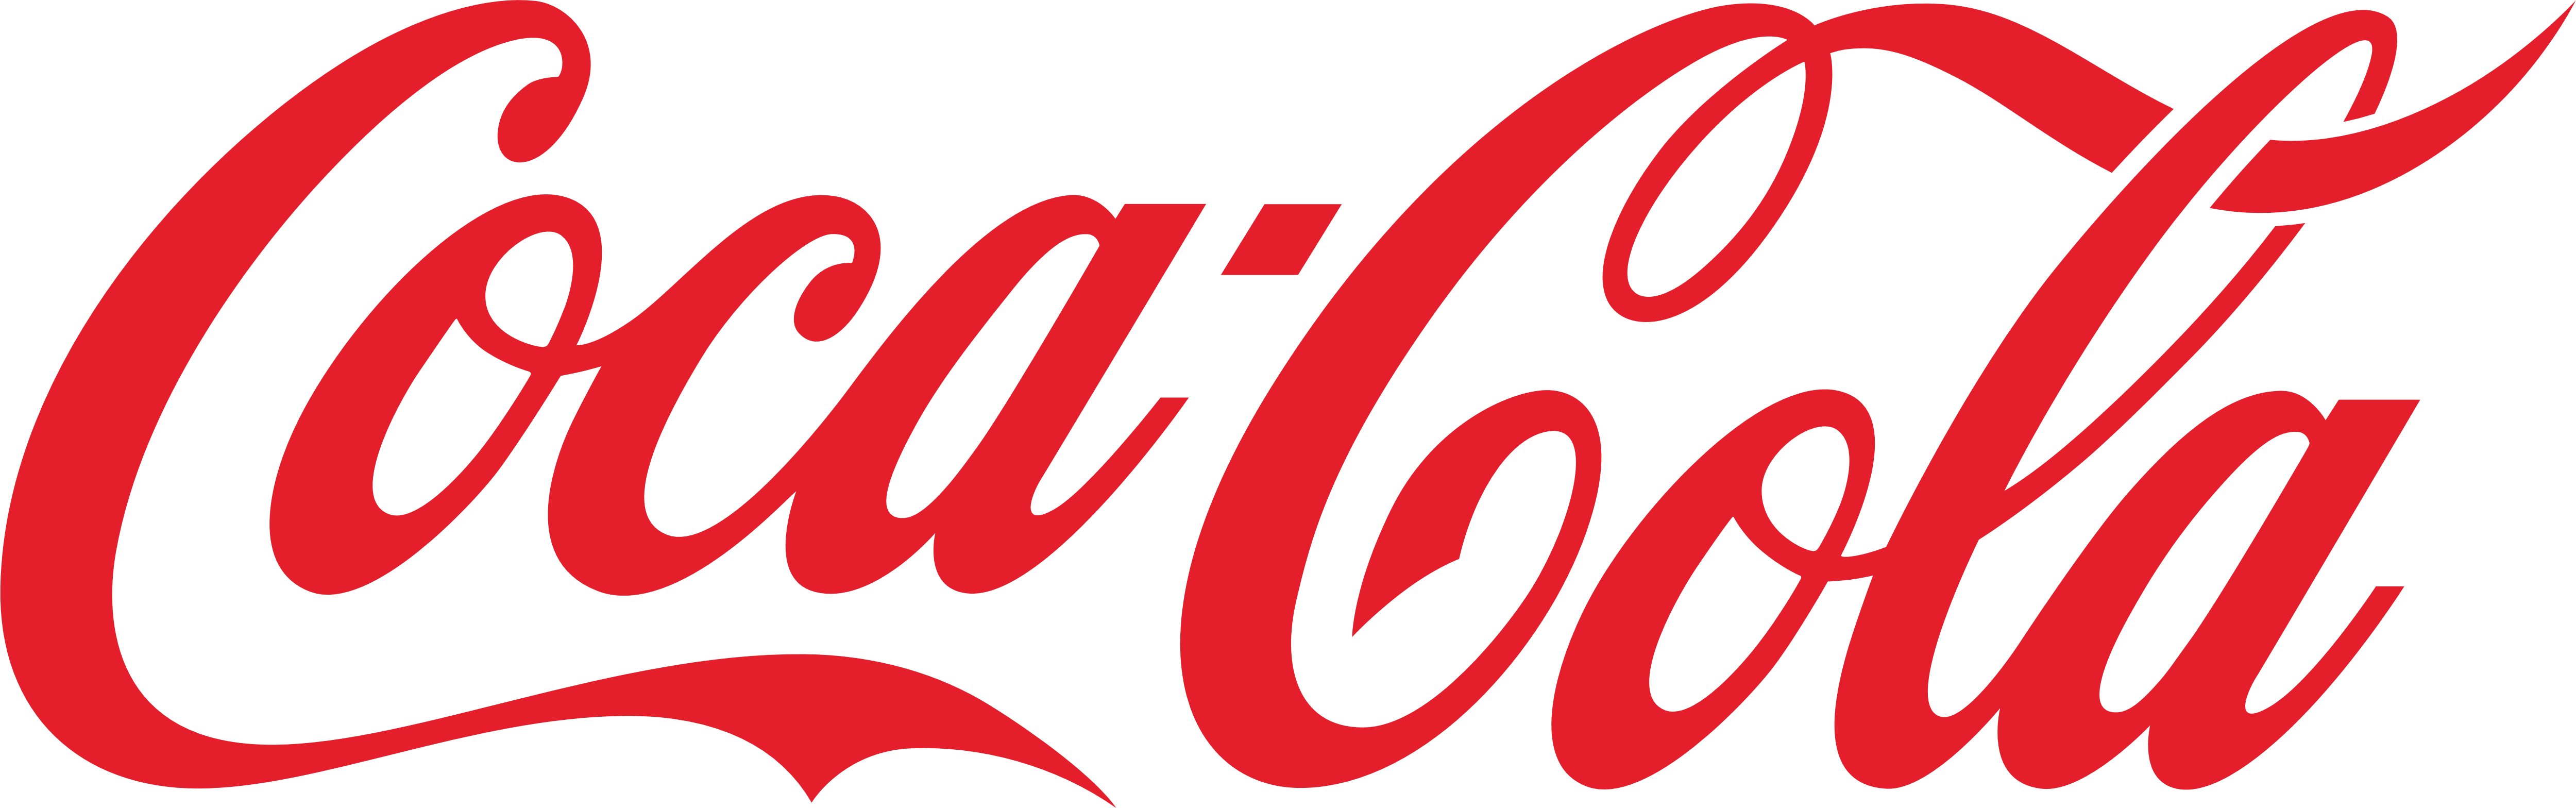 Coca Cola Partenaire EDIFICE